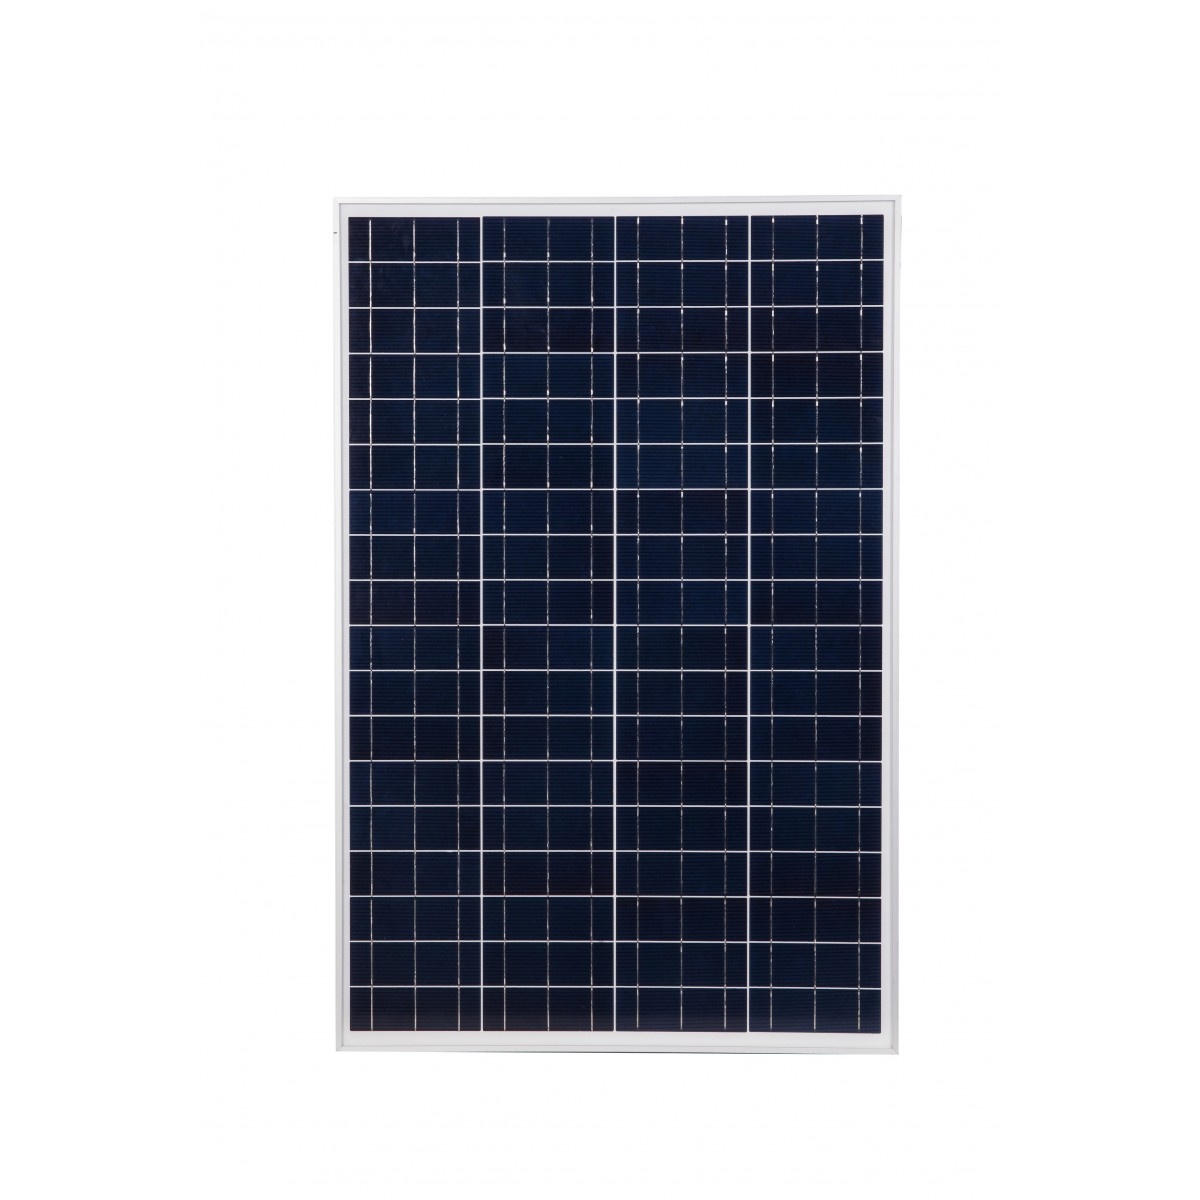 Image of Panel solarny polikrystaliczny 12V 110W SILVER VOLT POLSKA